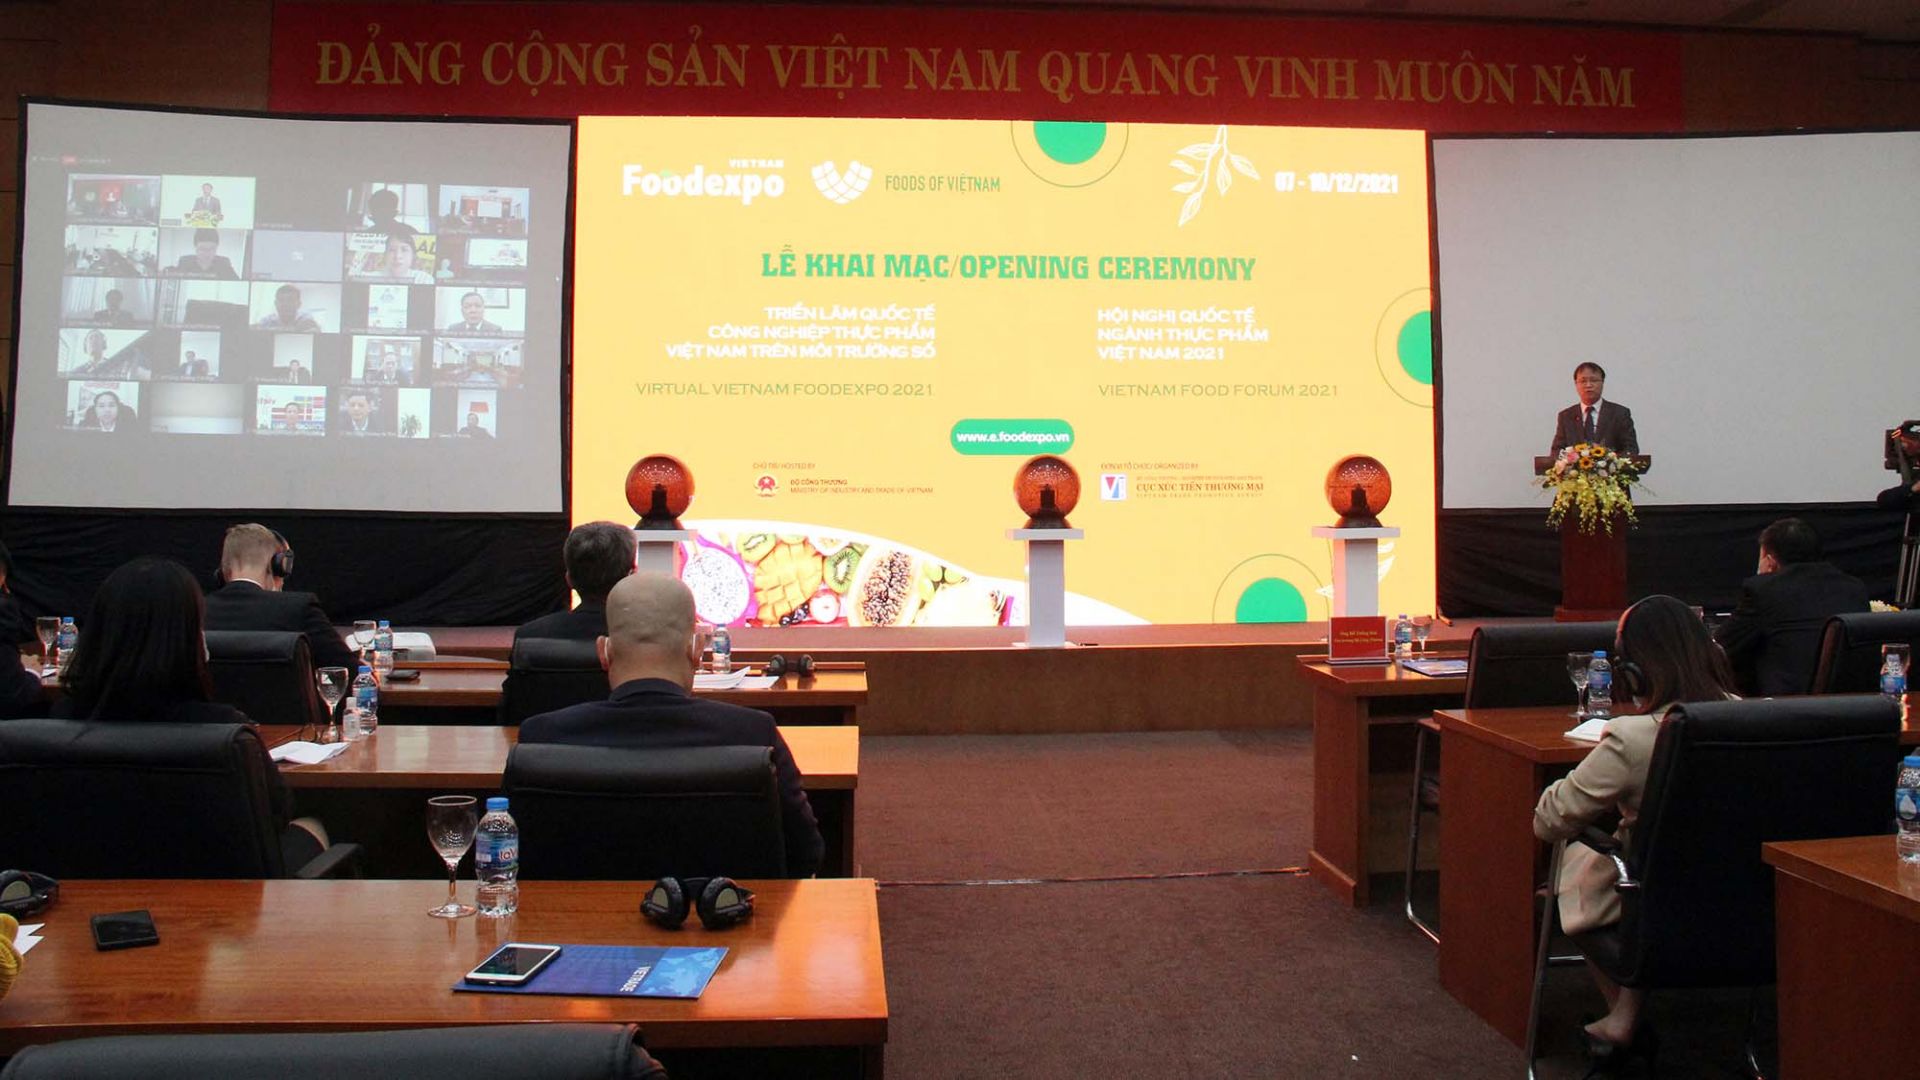 Vietnam Foodexpo: Cơ hội để doanh nghiệp hợp tác, kết nối giao thương trên môi trường số